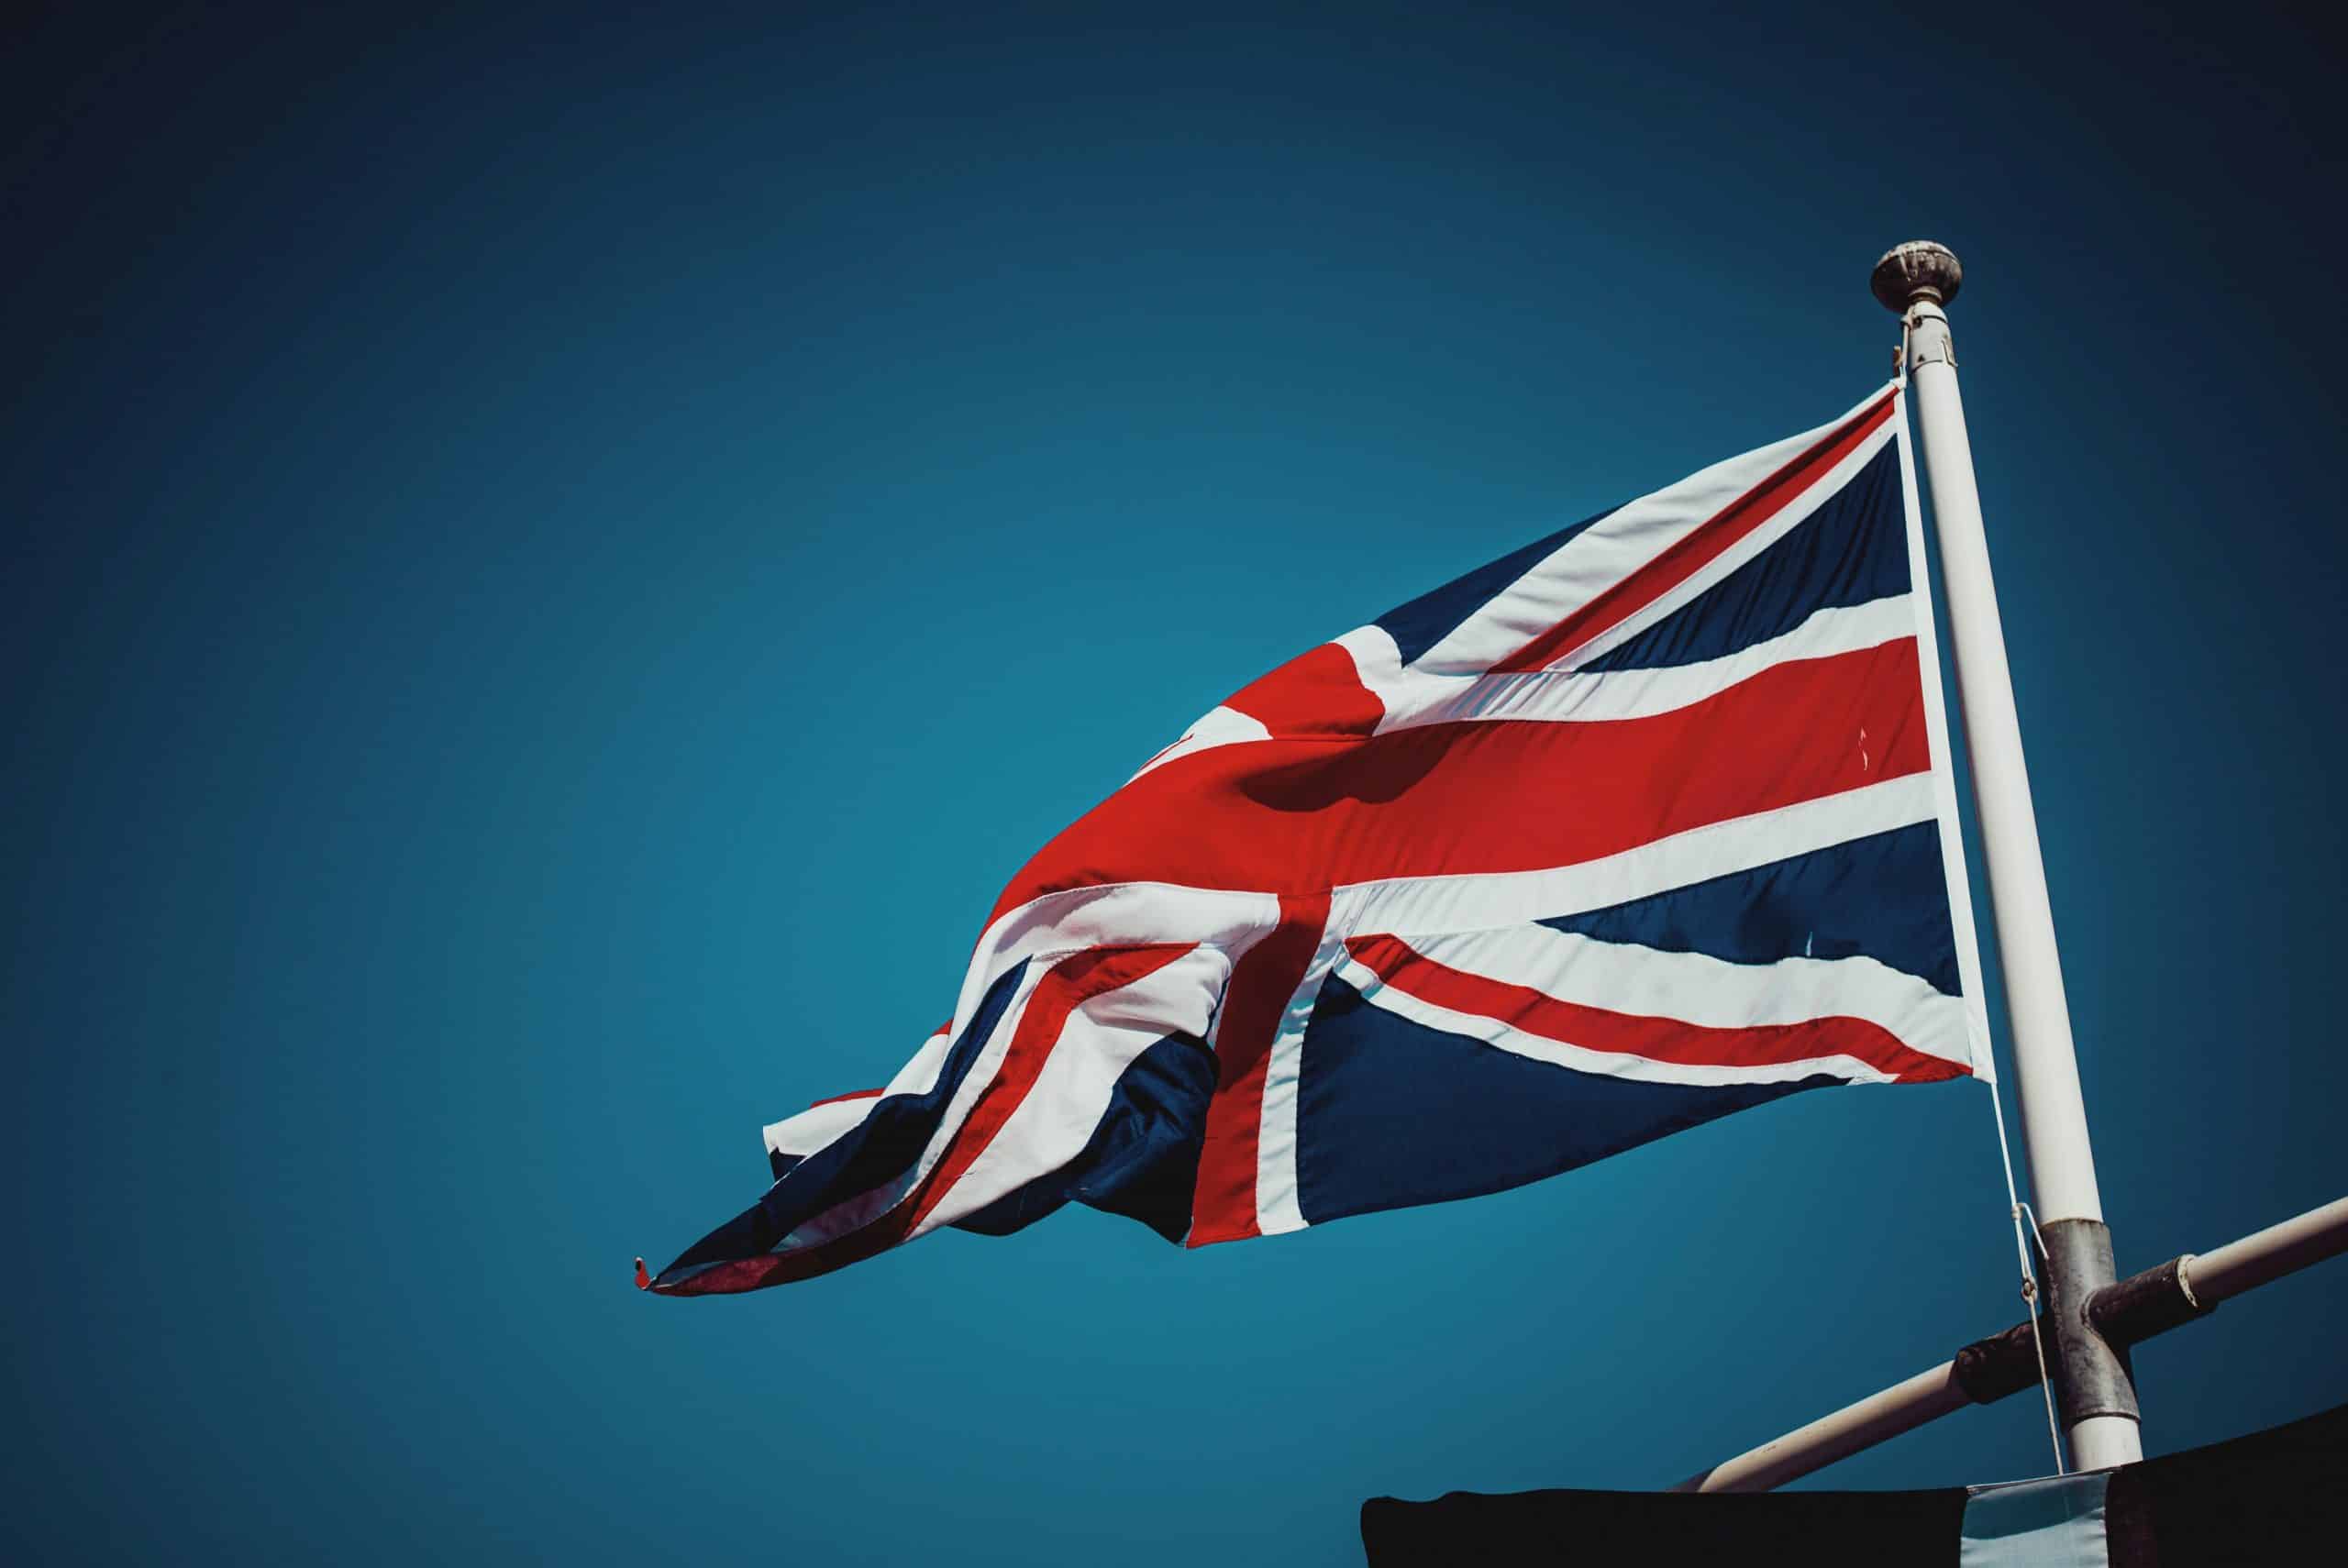 Le drapeau du Royaume-Uni.